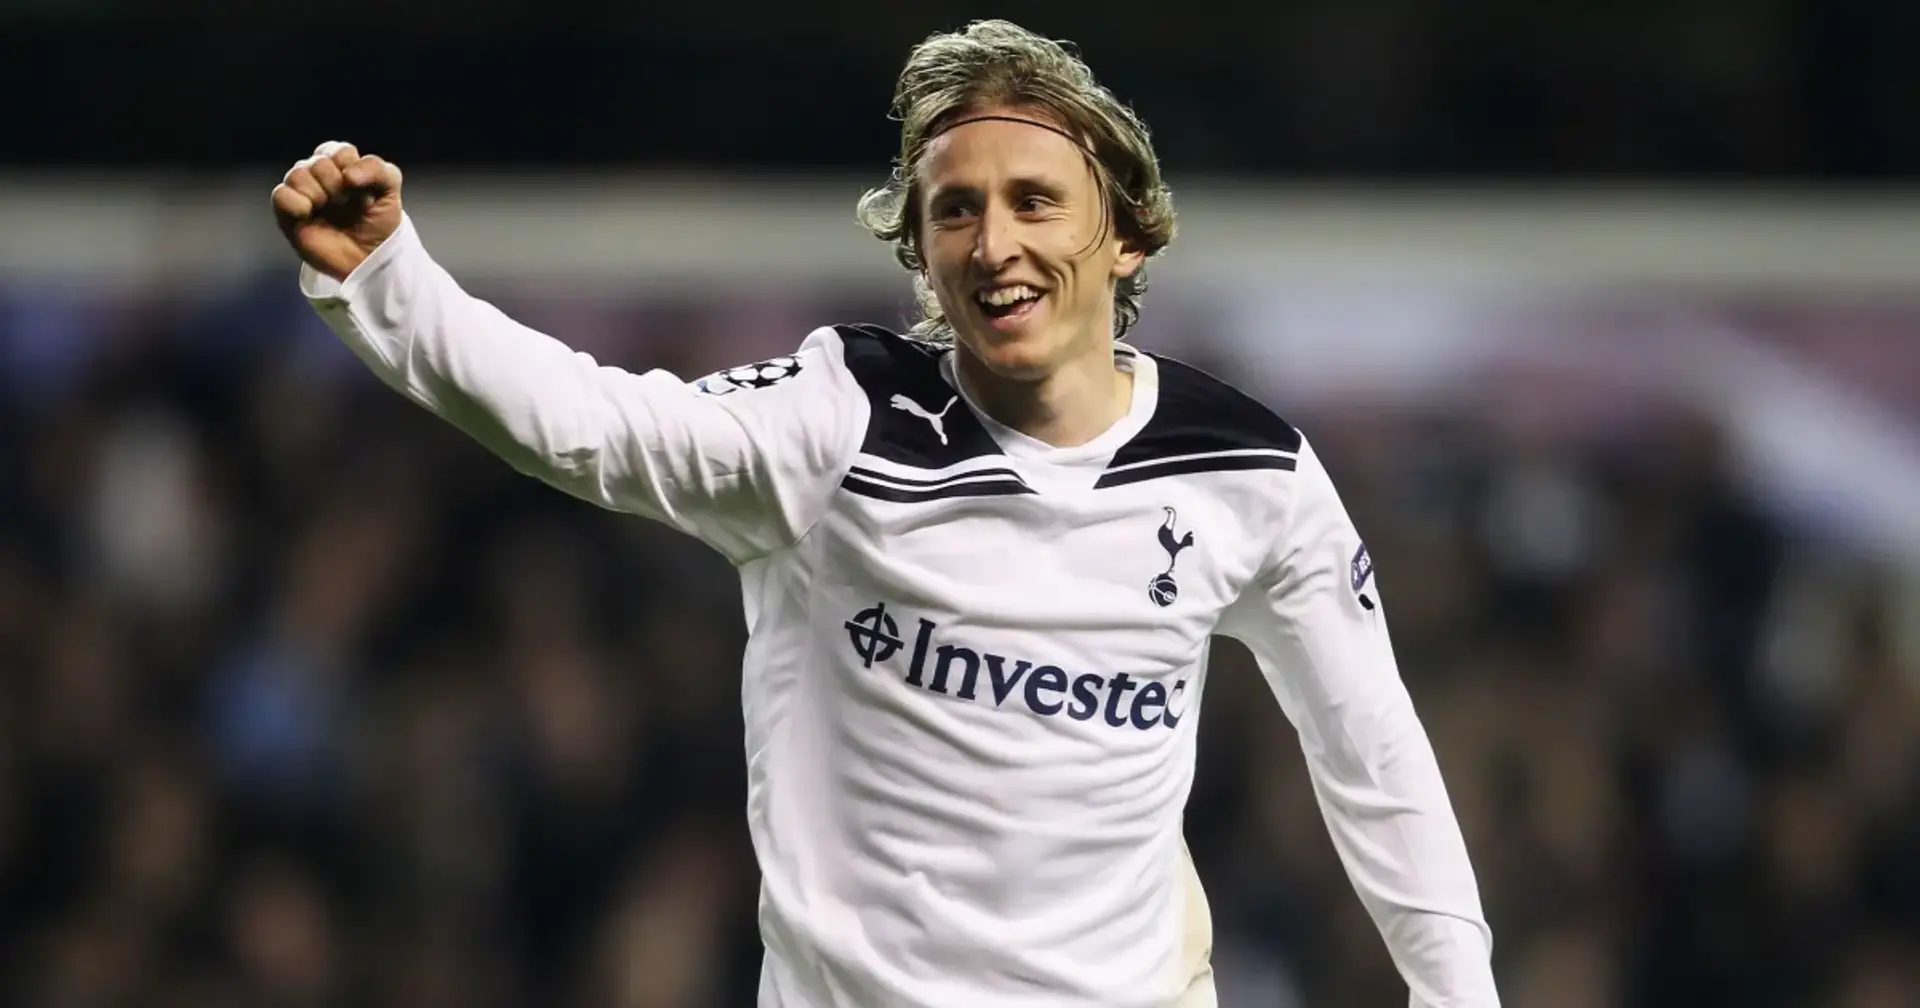 En el Tottenham sueñan traer de vuelta a Luka Modric después de asegurar las transferencias de Bale y Reguilon